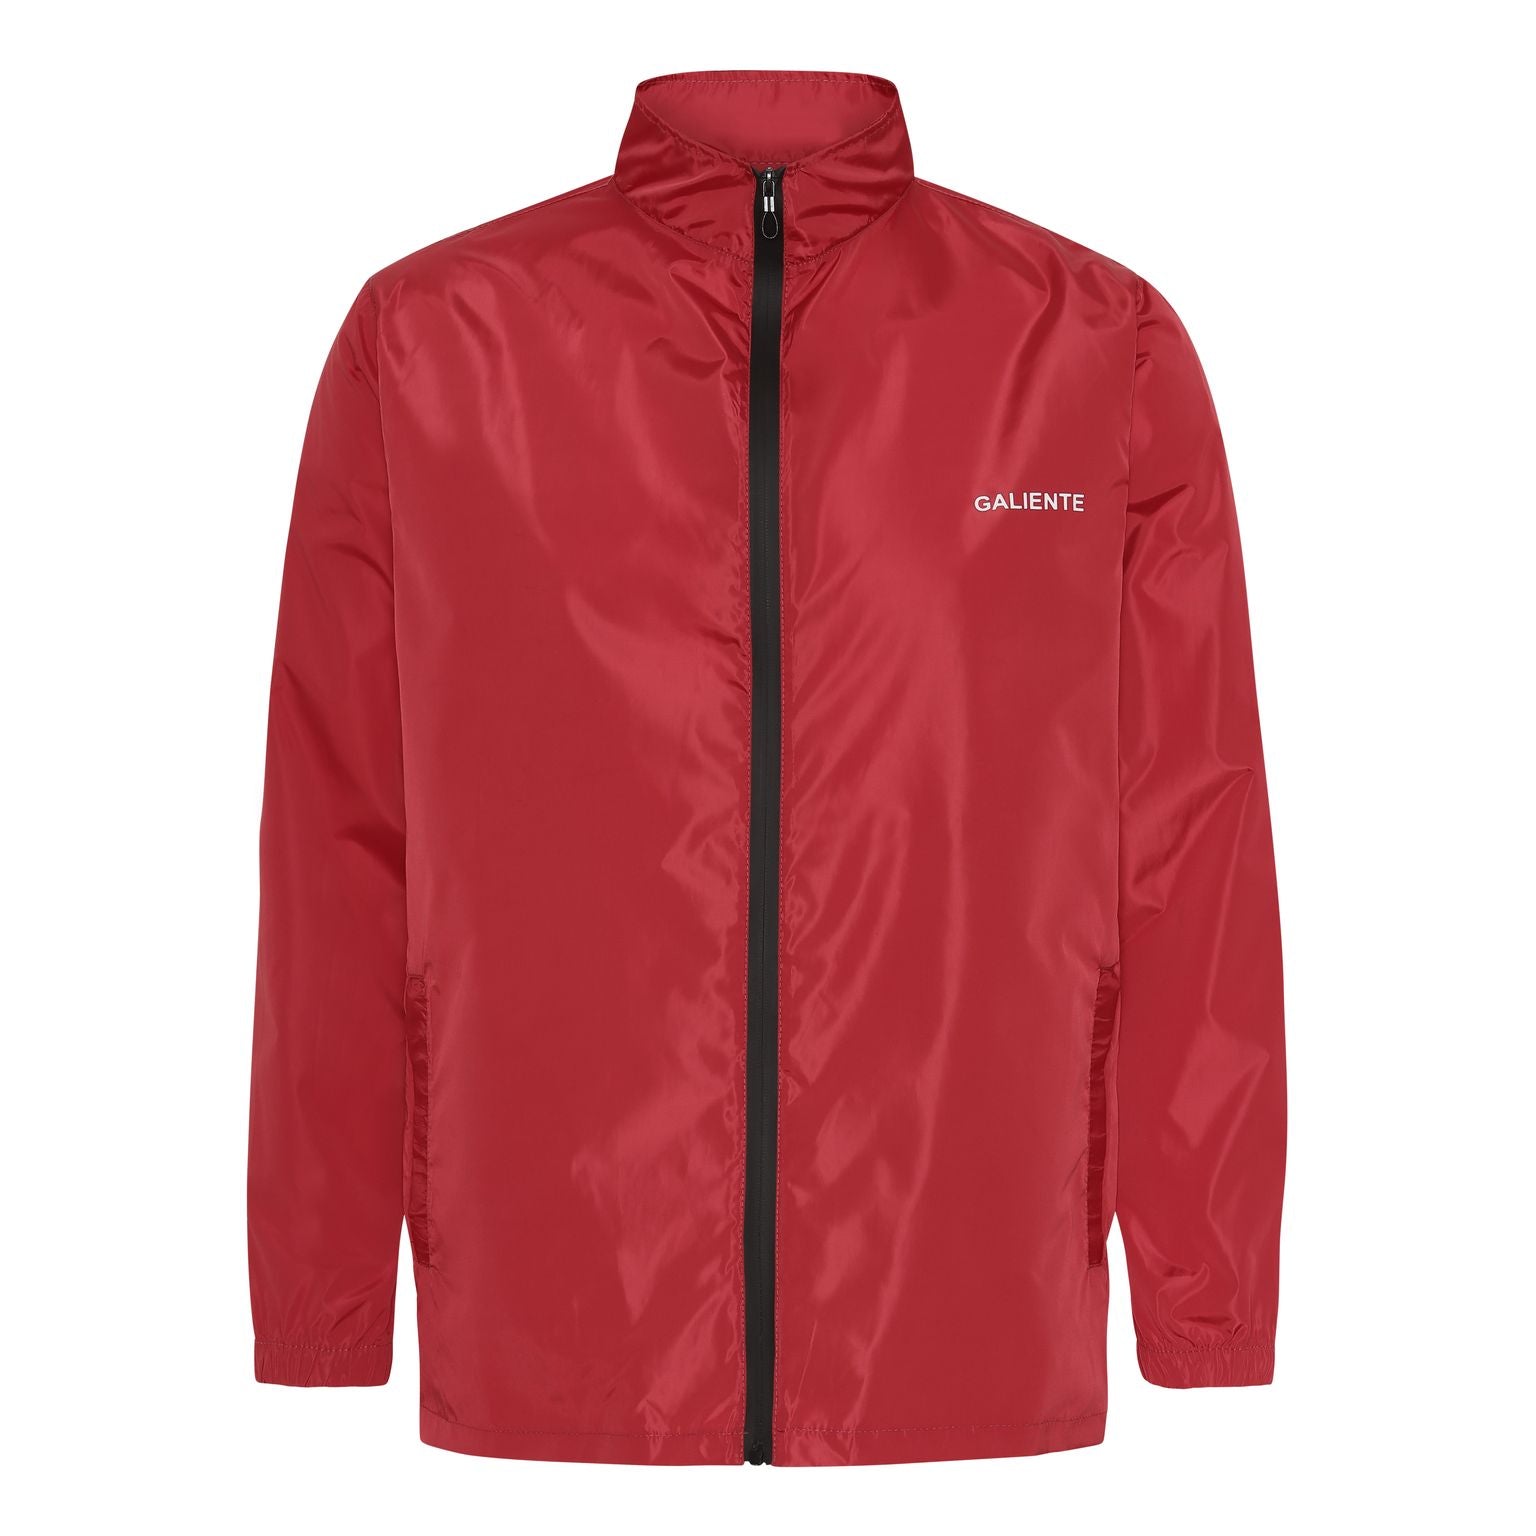 Waterproof red jacket